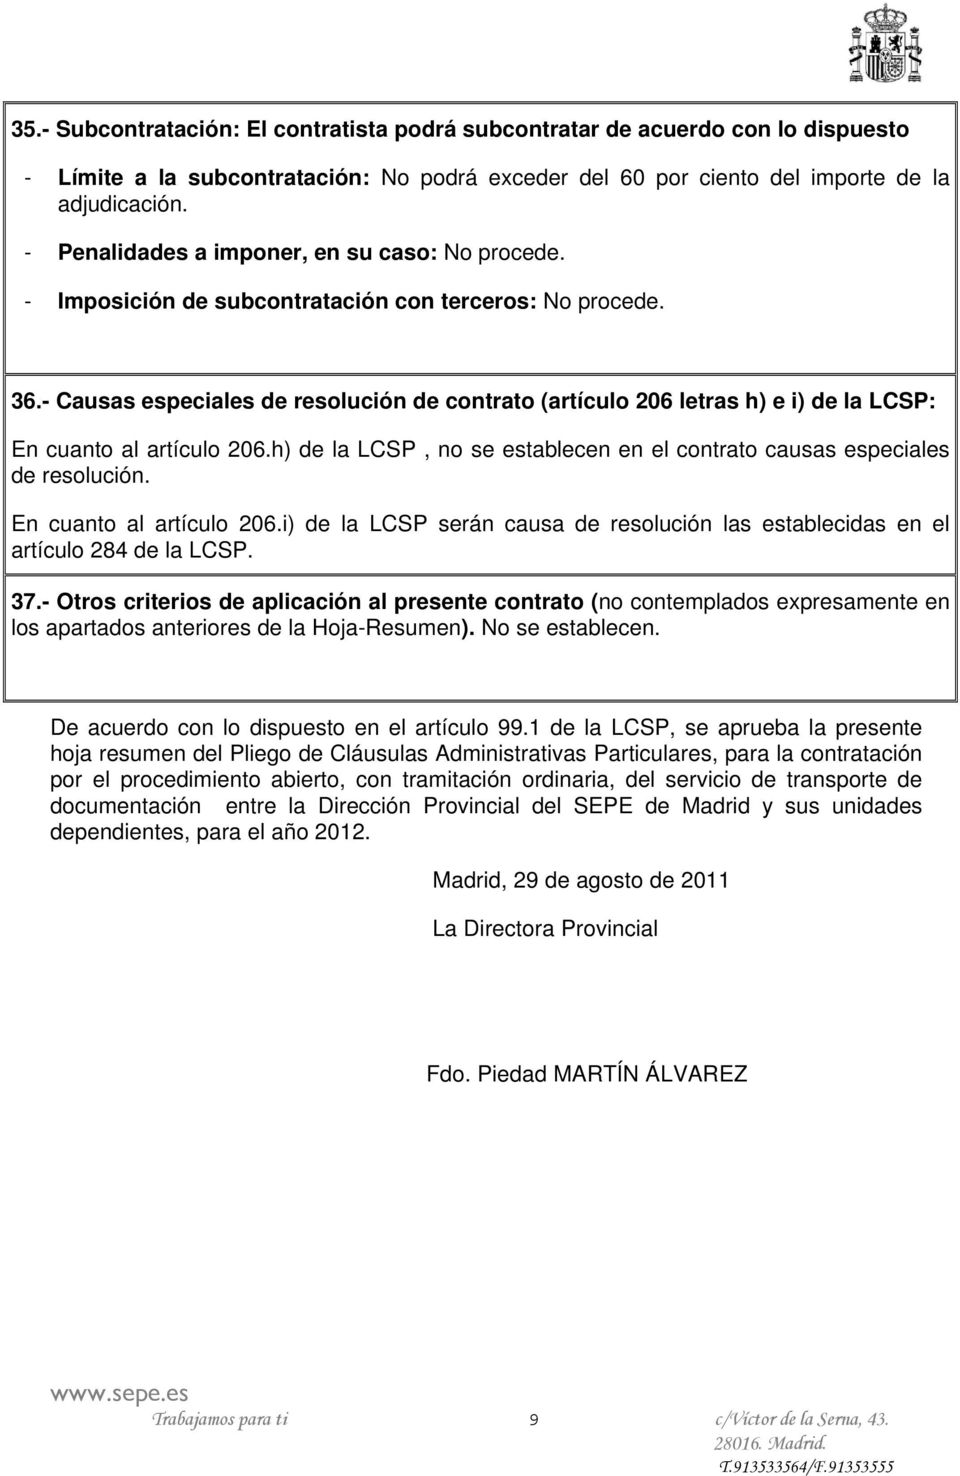 - Causas especiales de resolución de contrato (artículo 206 letras h) e i) de la LCSP: En cuanto al artículo 206.h) de la LCSP, no se establecen en el contrato causas especiales de resolución.